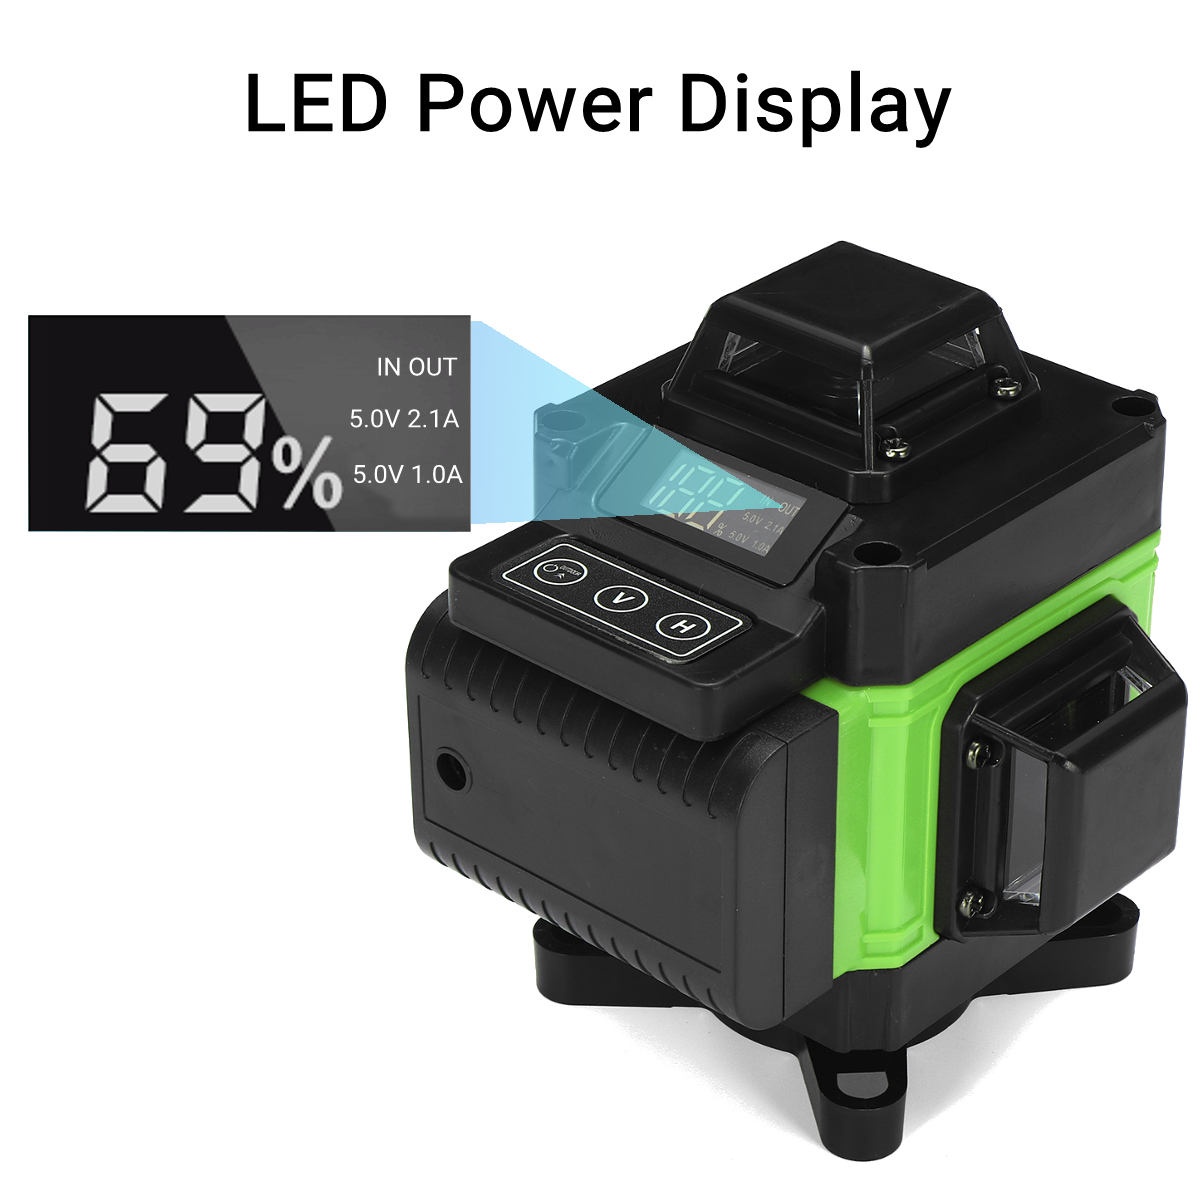 LED-Display-3D-360deg-16-Line-Green-Light-Laser-Level-Cross-Self-Leveling-Measure-Tool-1700669-3